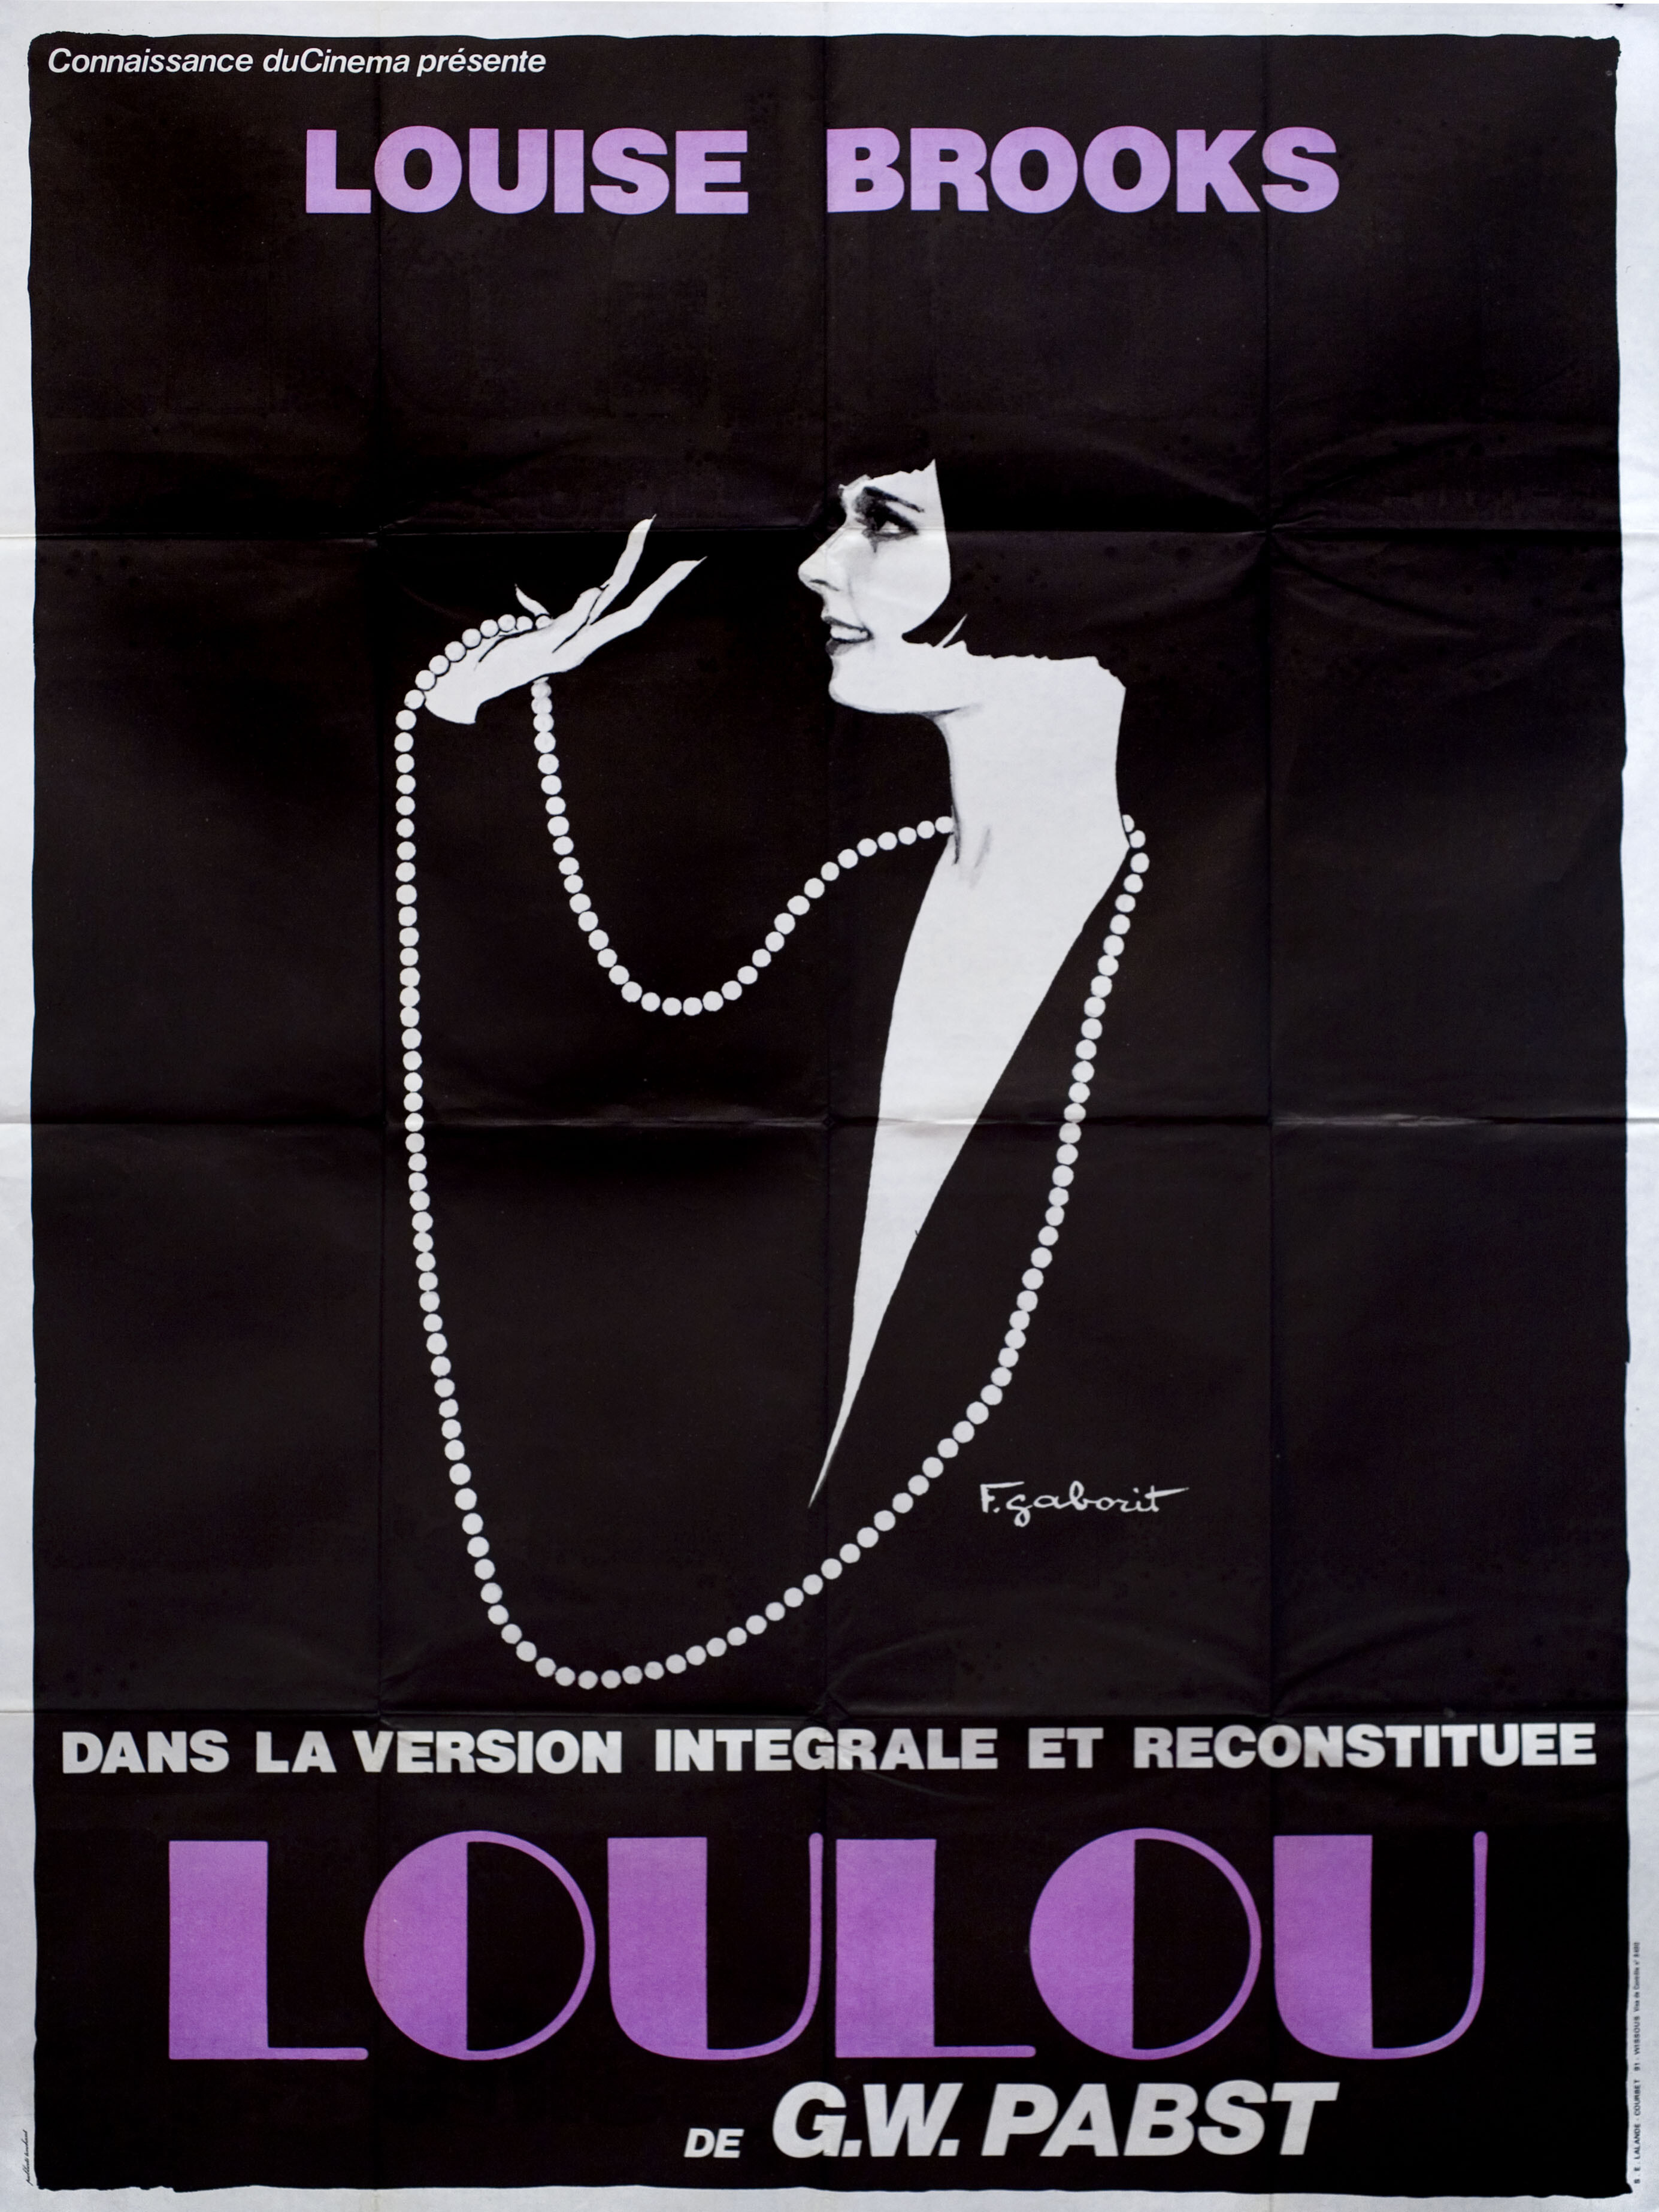 Ящик Пандоры (Pandoras Box, 1929), режиссёр Георг Вильгельм Пабст, постер к фильму в стиле ар-деко (Франция, 1970 год), автор Габорит